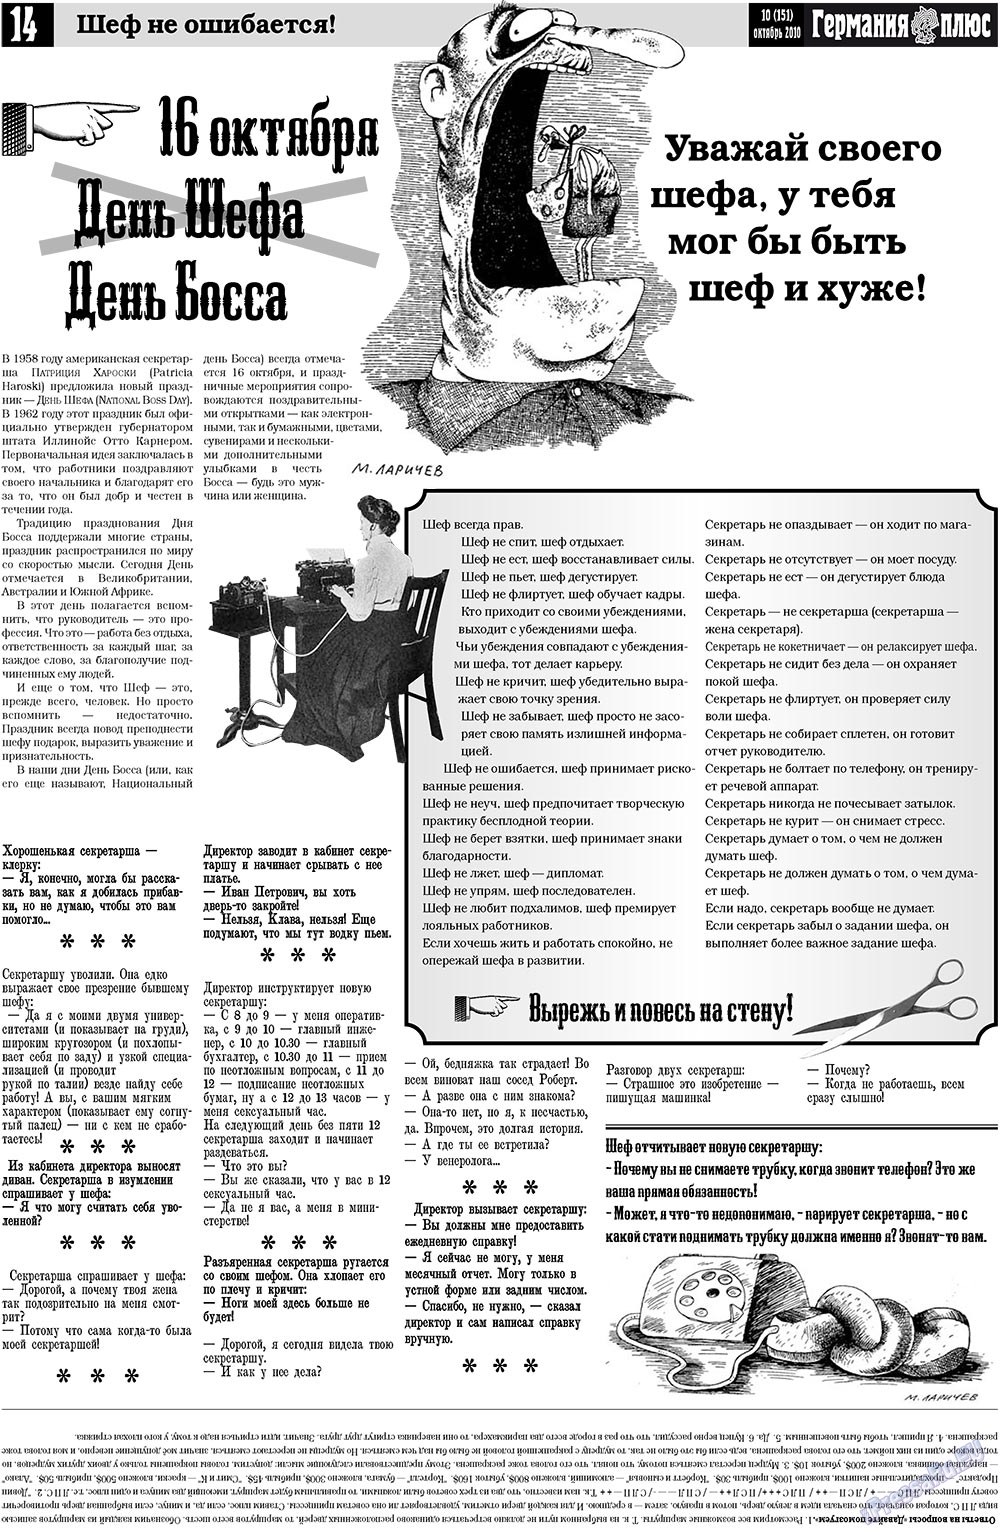 Германия плюс (газета). 2010 год, номер 10, стр. 14